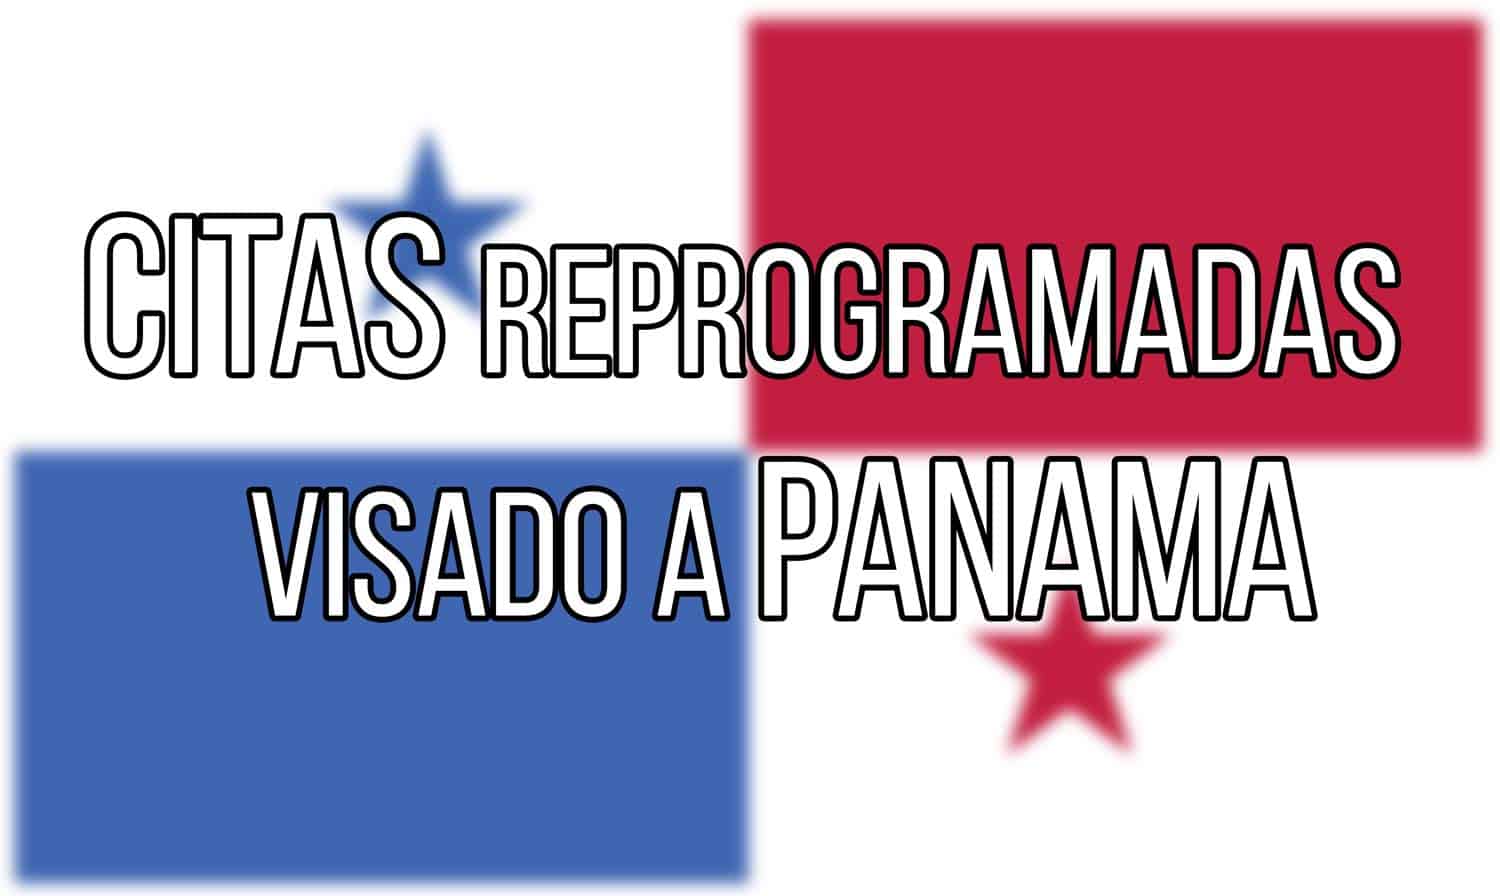 listado de Citas de visado Reprogramadas en la Embajada de Panamá en Cuba